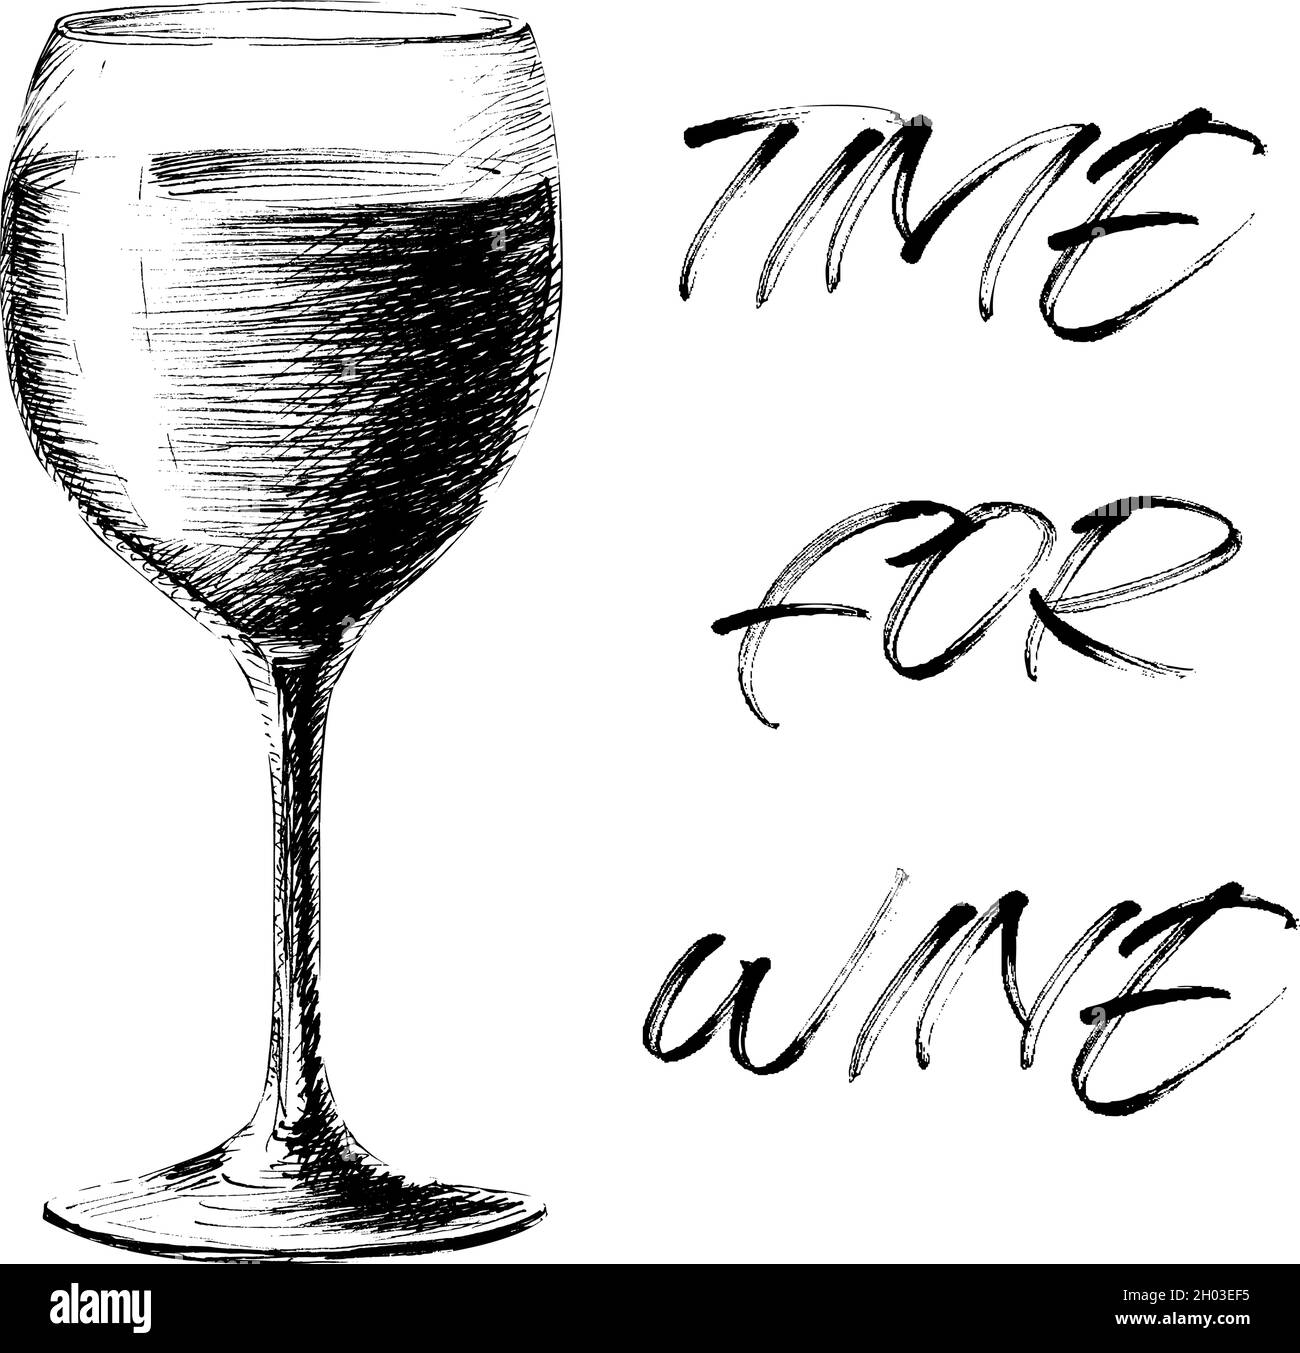 Handgezeichnete Vektordarstellung eines Glases Wein mit einem Satz Zeit für Wein Schriftzug Zitat isoliert auf weißem Hintergrund. Weinglas Getränke Trinken Kunst in einem Sketch-Stil. Stock Vektor